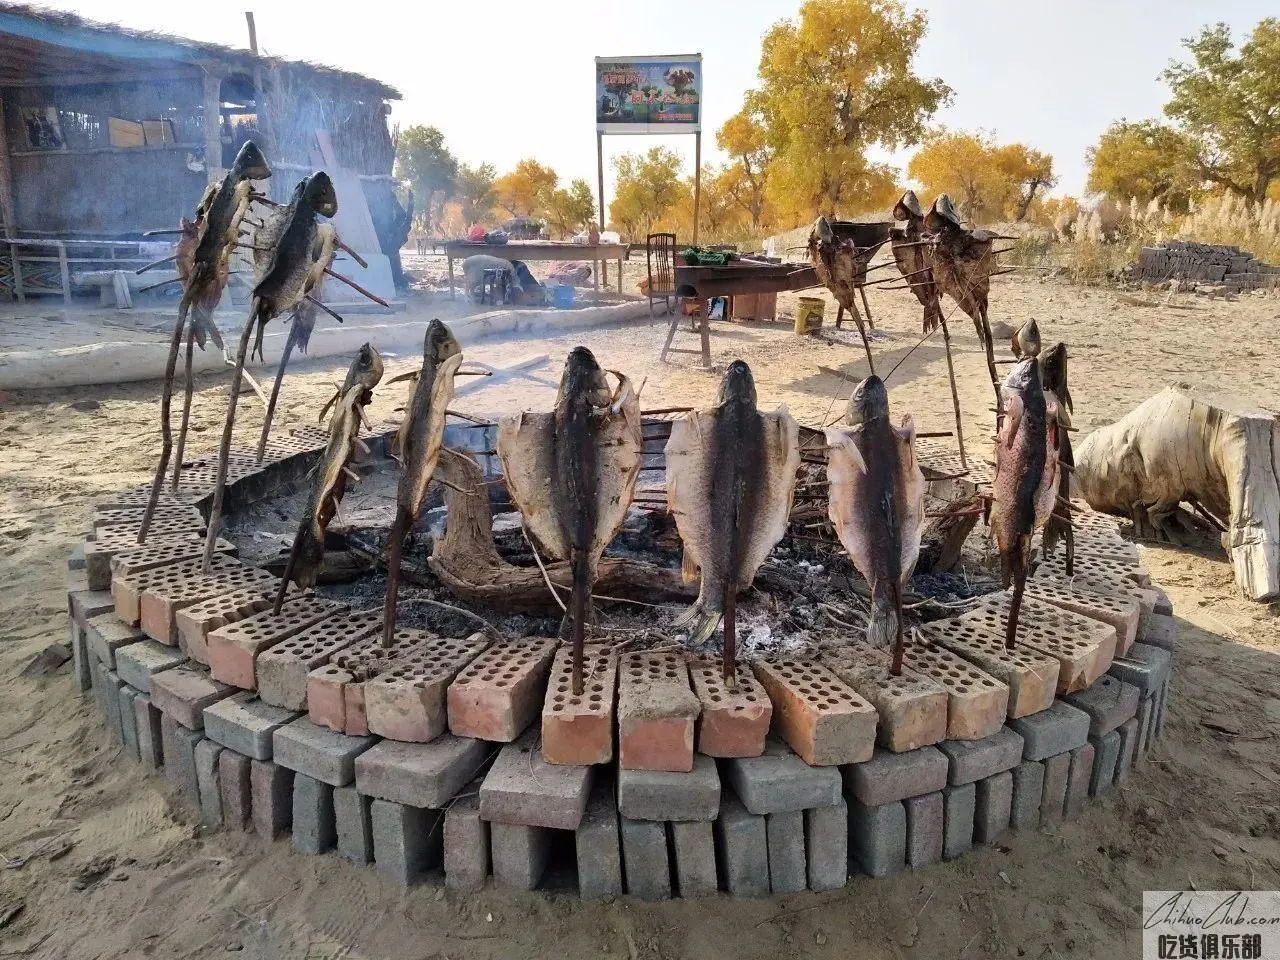 Gobi grilled fish